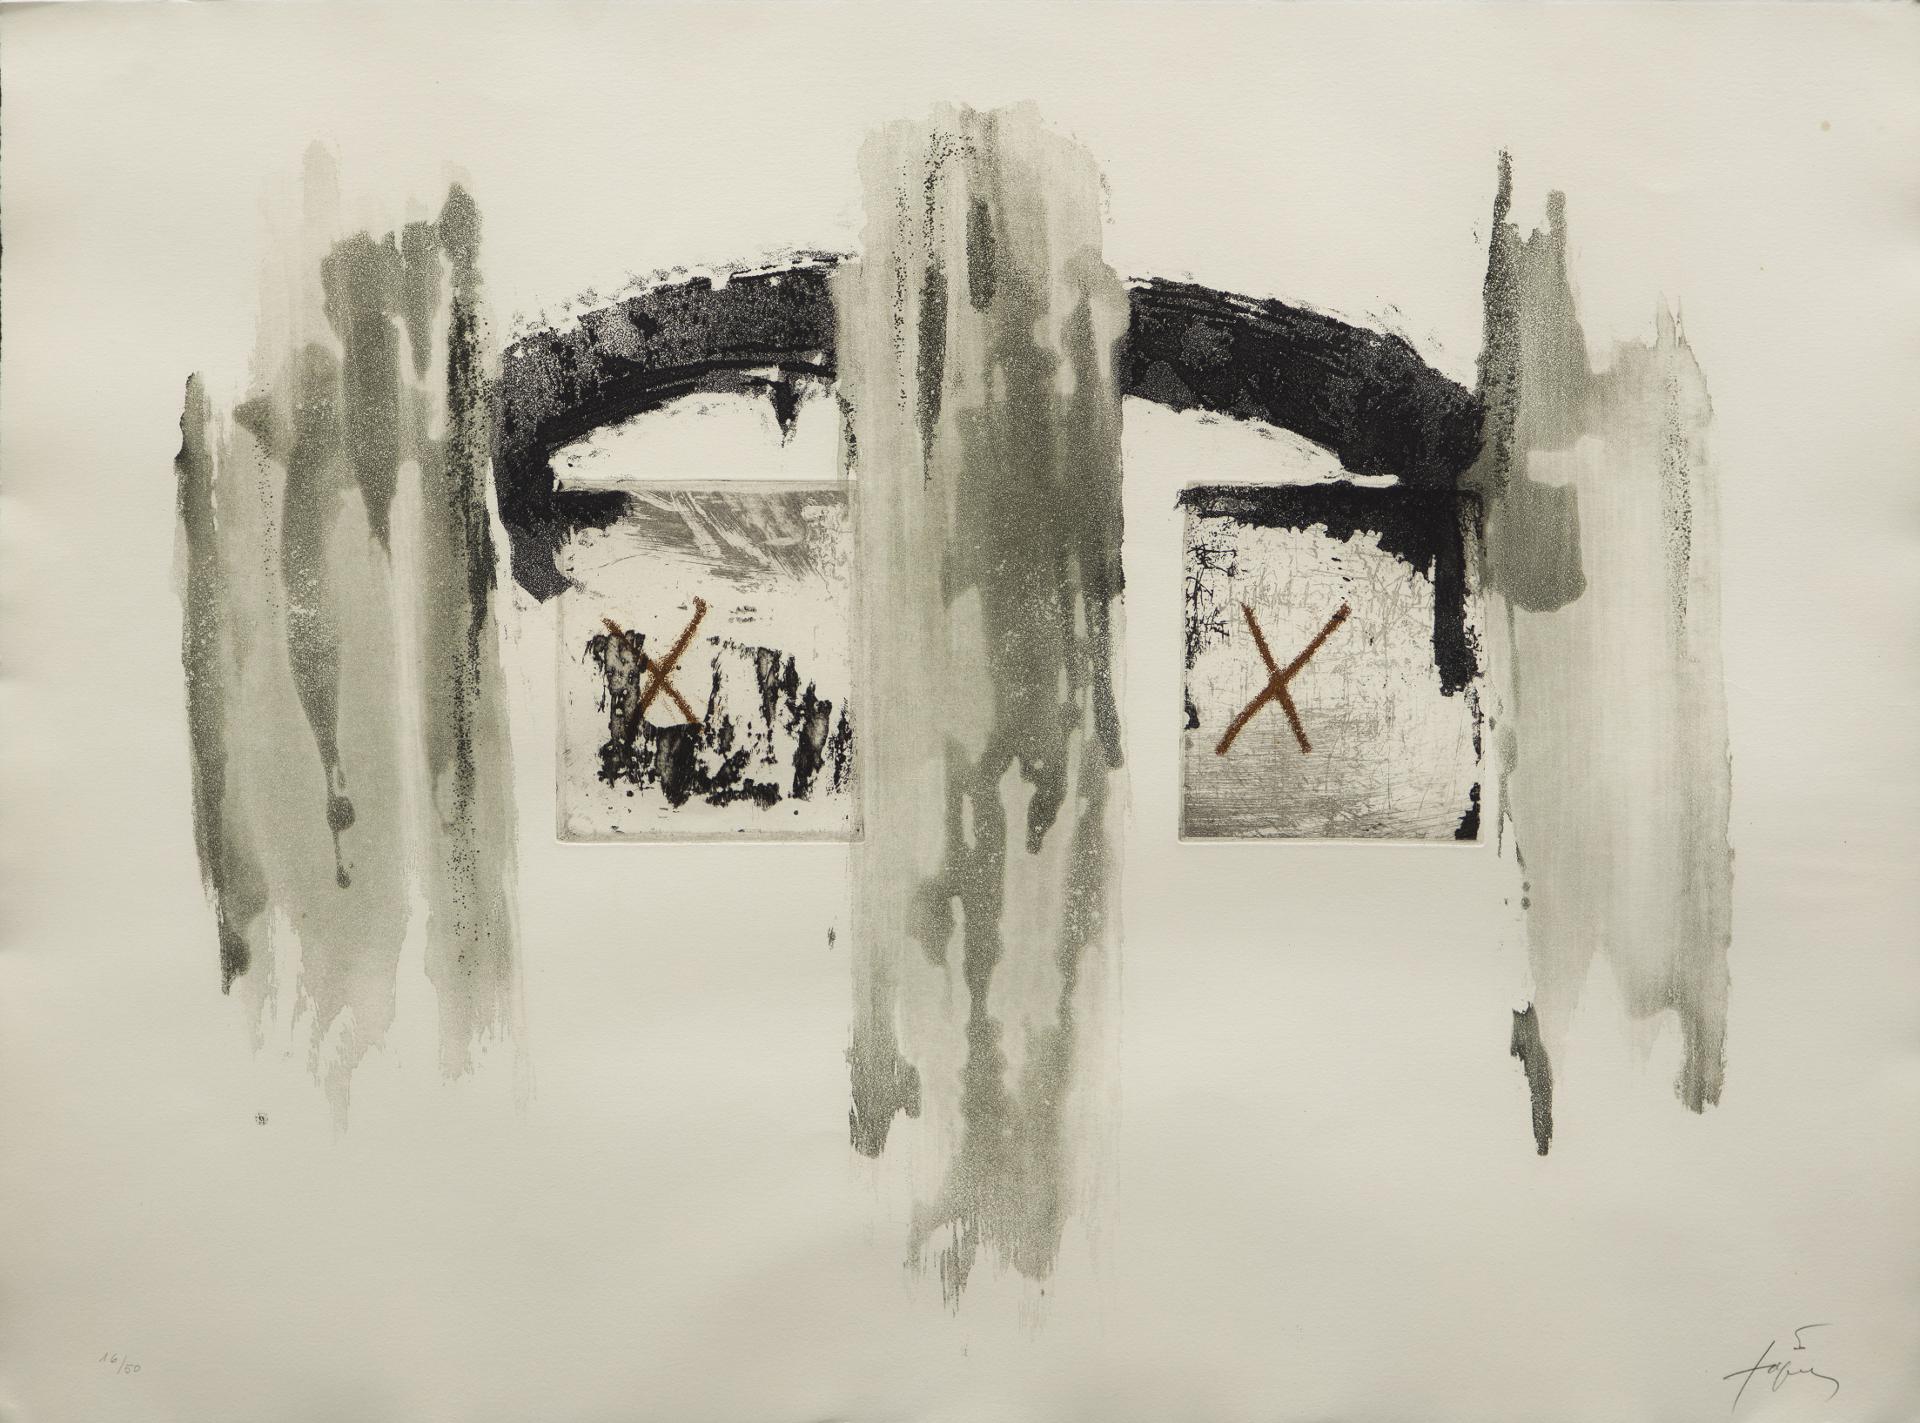 Antoni Tàpies (1923-2012) - Arc et colonnes, 1976